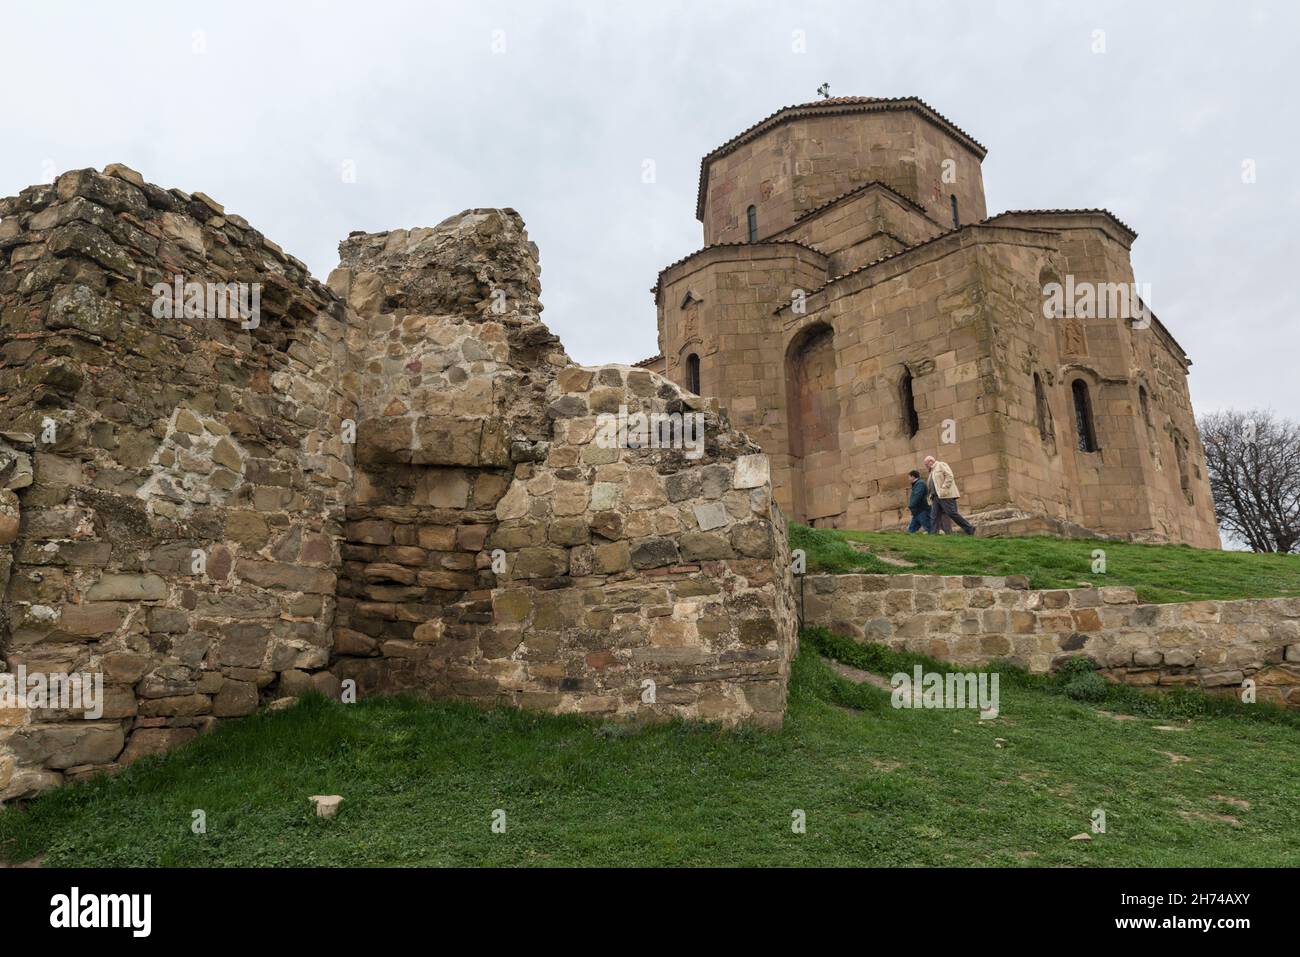 Das Jvari-Kloster (Kreuzkloster) und die Reste seiner steinernen Befestigungsmauer auf dem Berg Jvari in der Nähe von Mzcheta, Georgien, Kaukasus Stockfoto